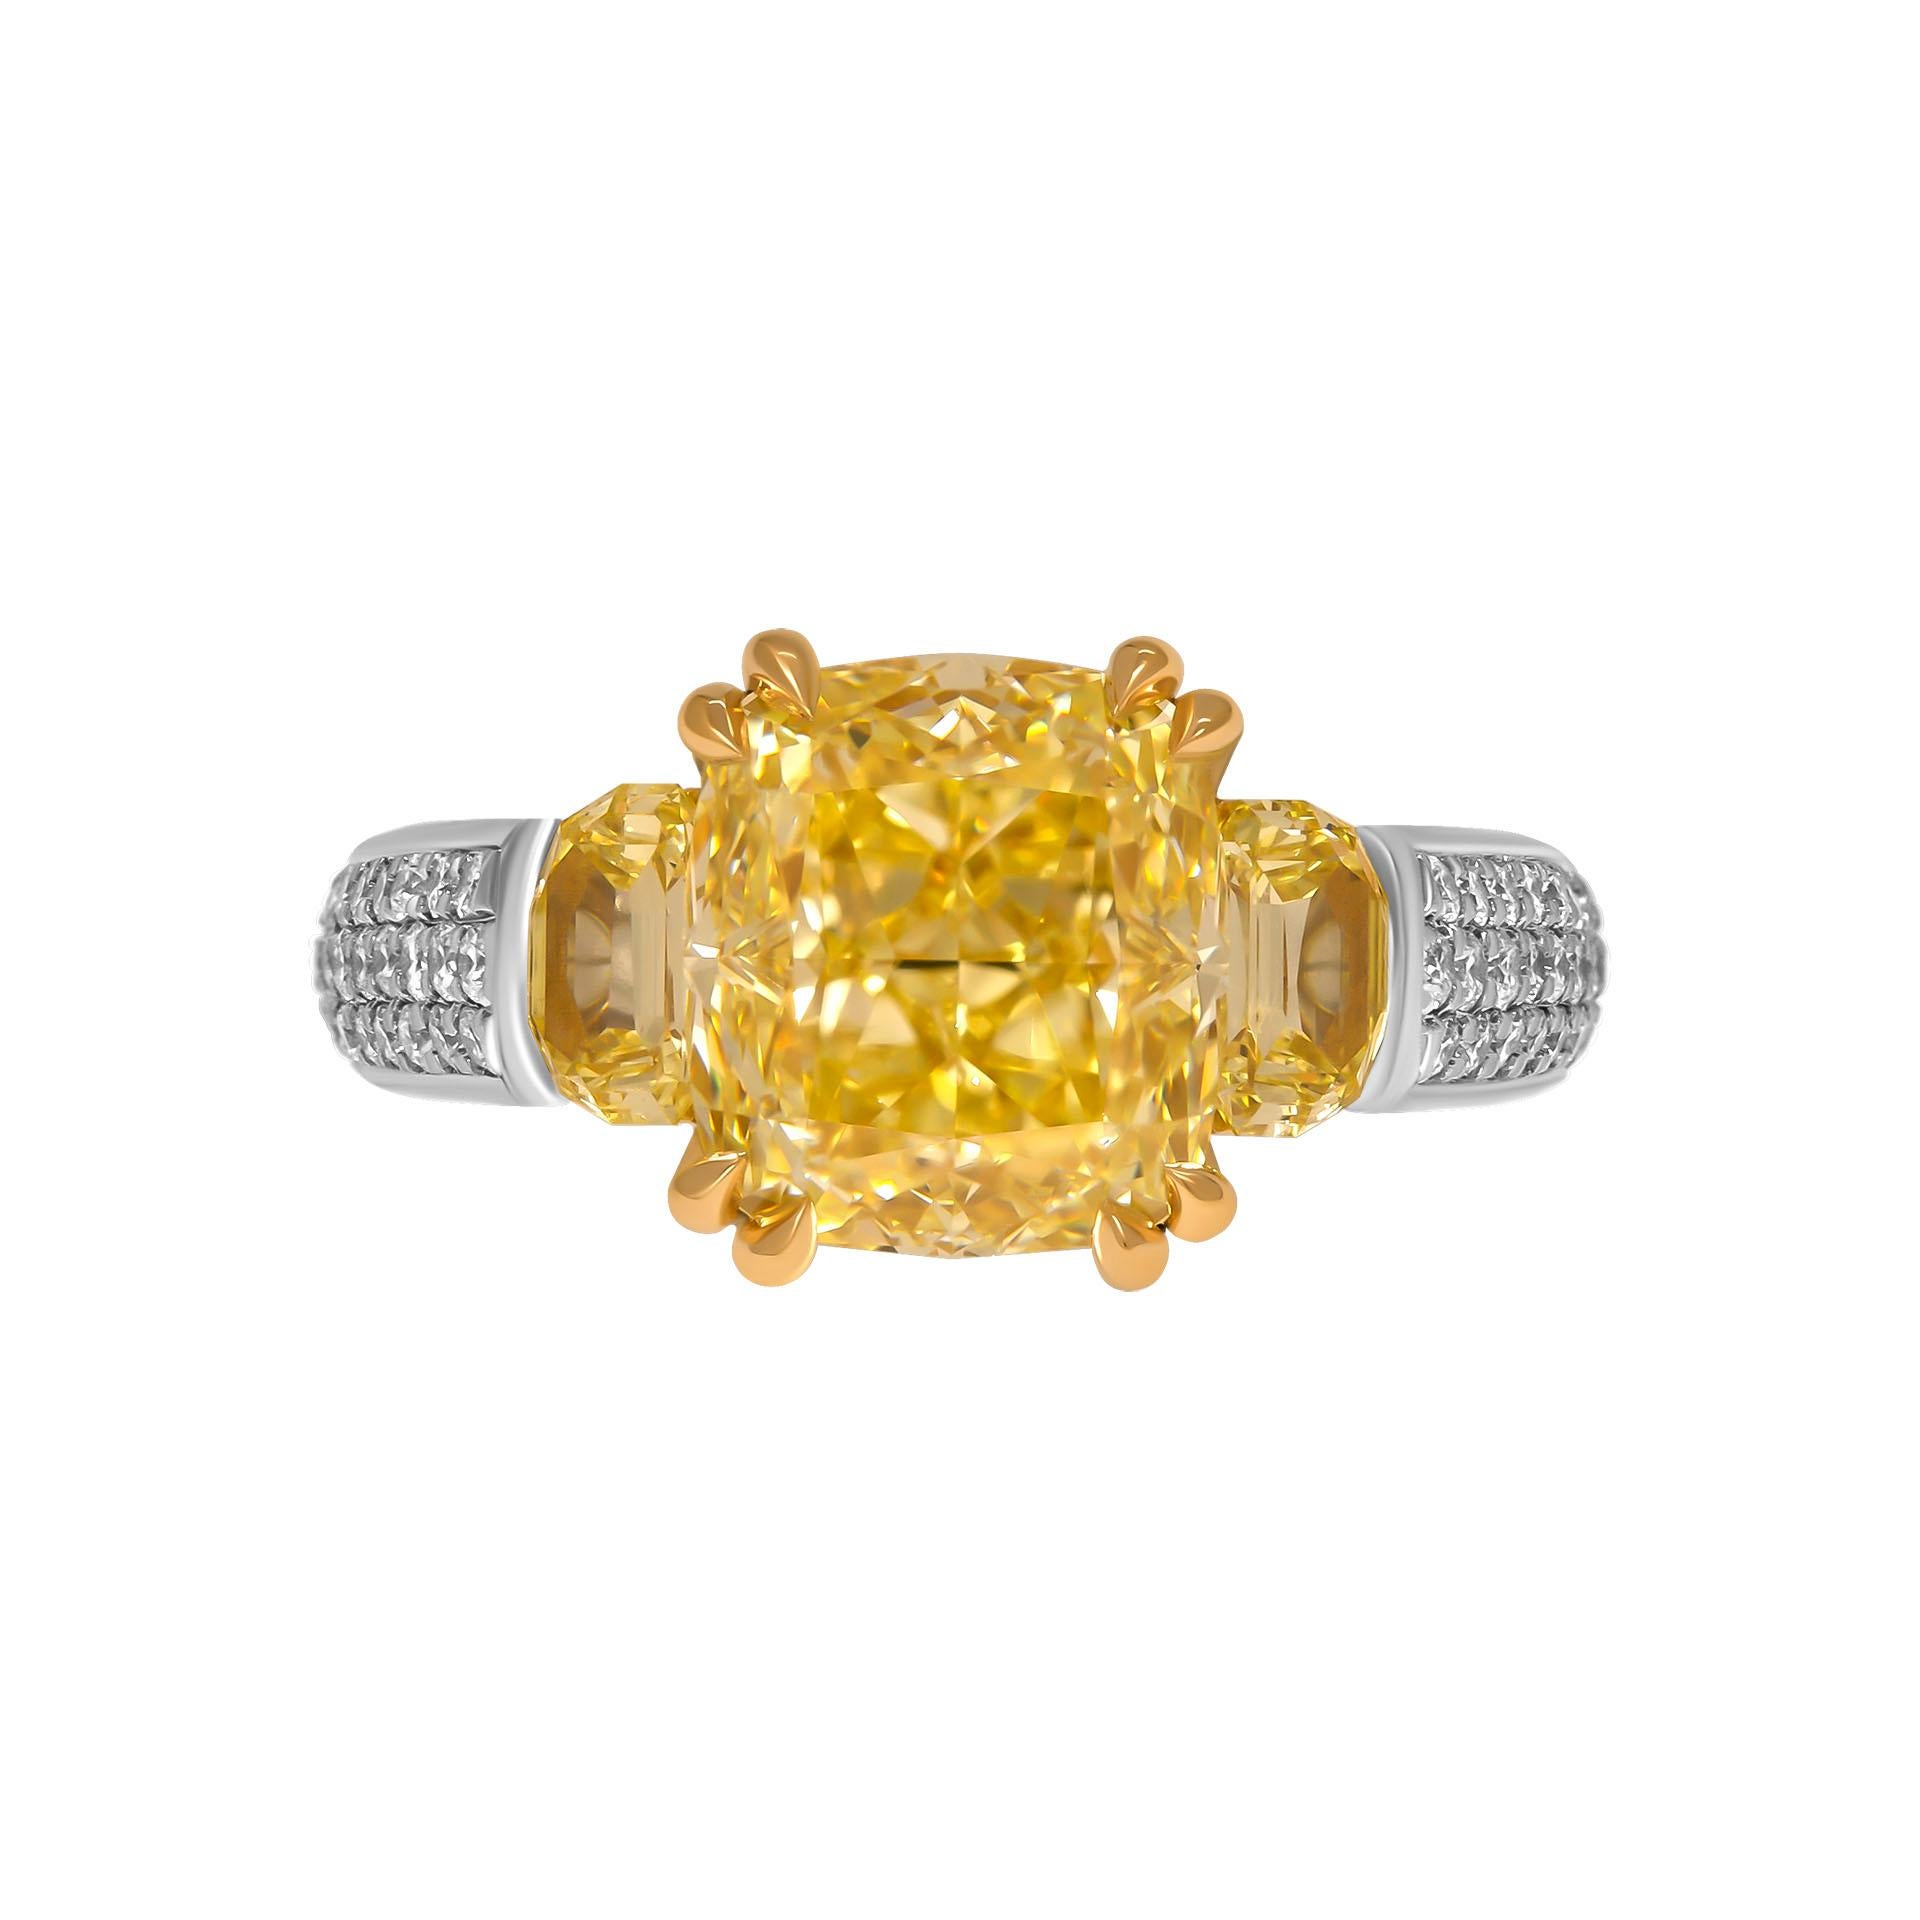 3-Stein-Ring aus Platin & 18K Gelbgold

Zentrum: 4.04ct Natürlicher Fancy Yellow Even VVS2 Cushion Shape Diamant GIA#2223222634 

Zwei seitliche Halbmonde bilden eine Raute:
                                                               0,27ct Fancy